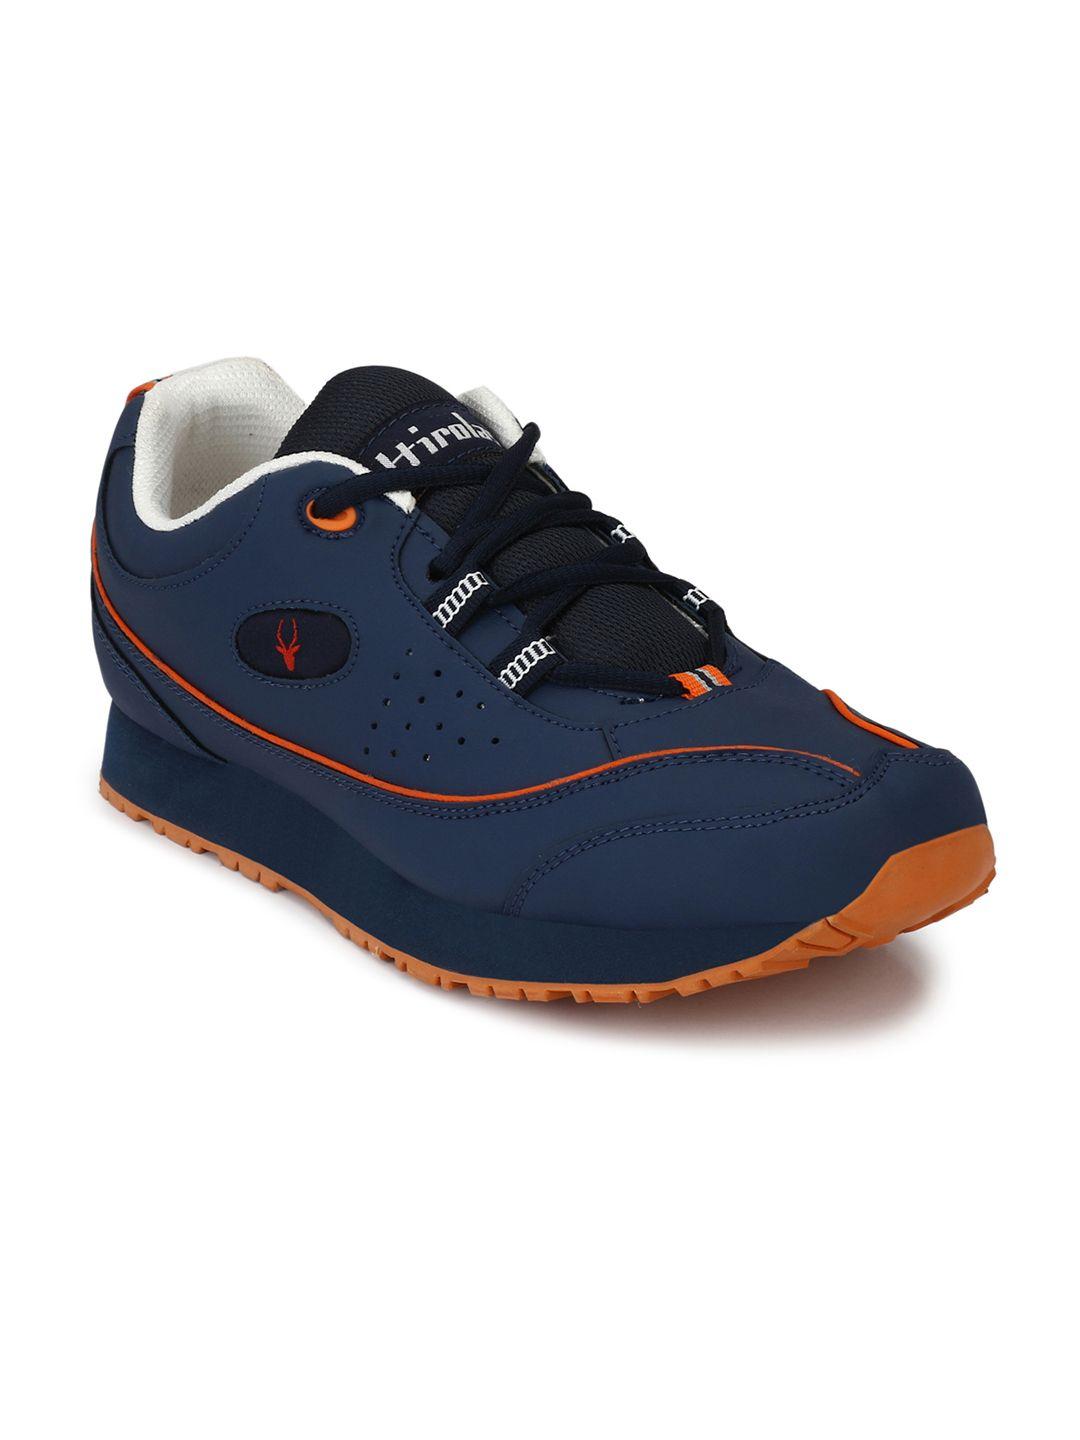 hirolas-men-navy-blue-running-shoes